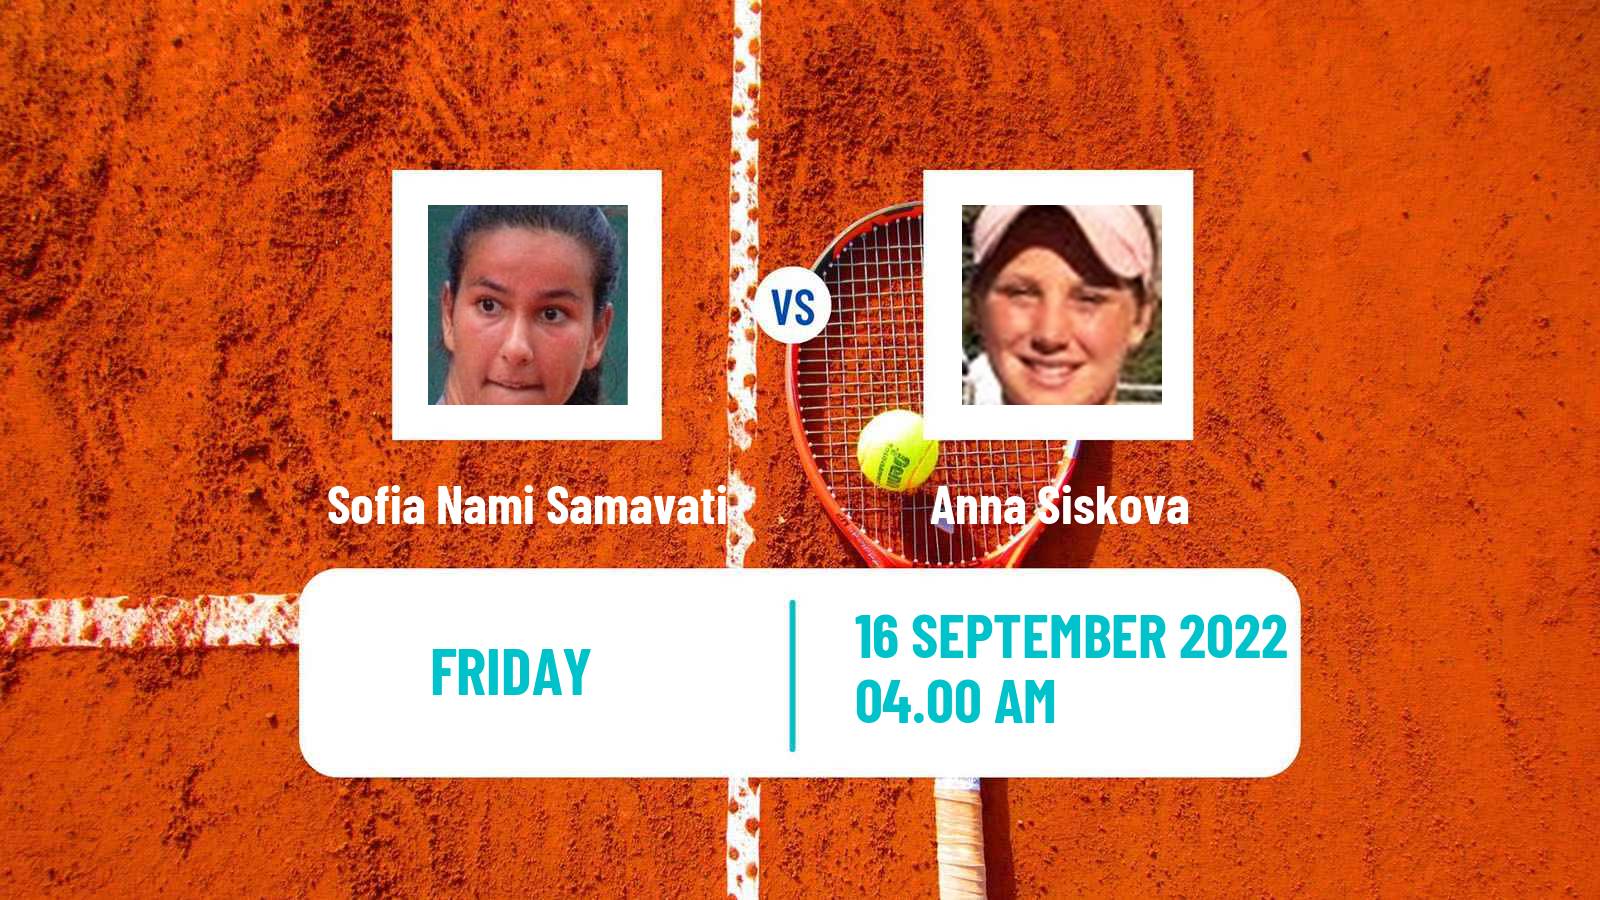 Tennis ITF Tournaments Sofia Nami Samavati - Anna Siskova